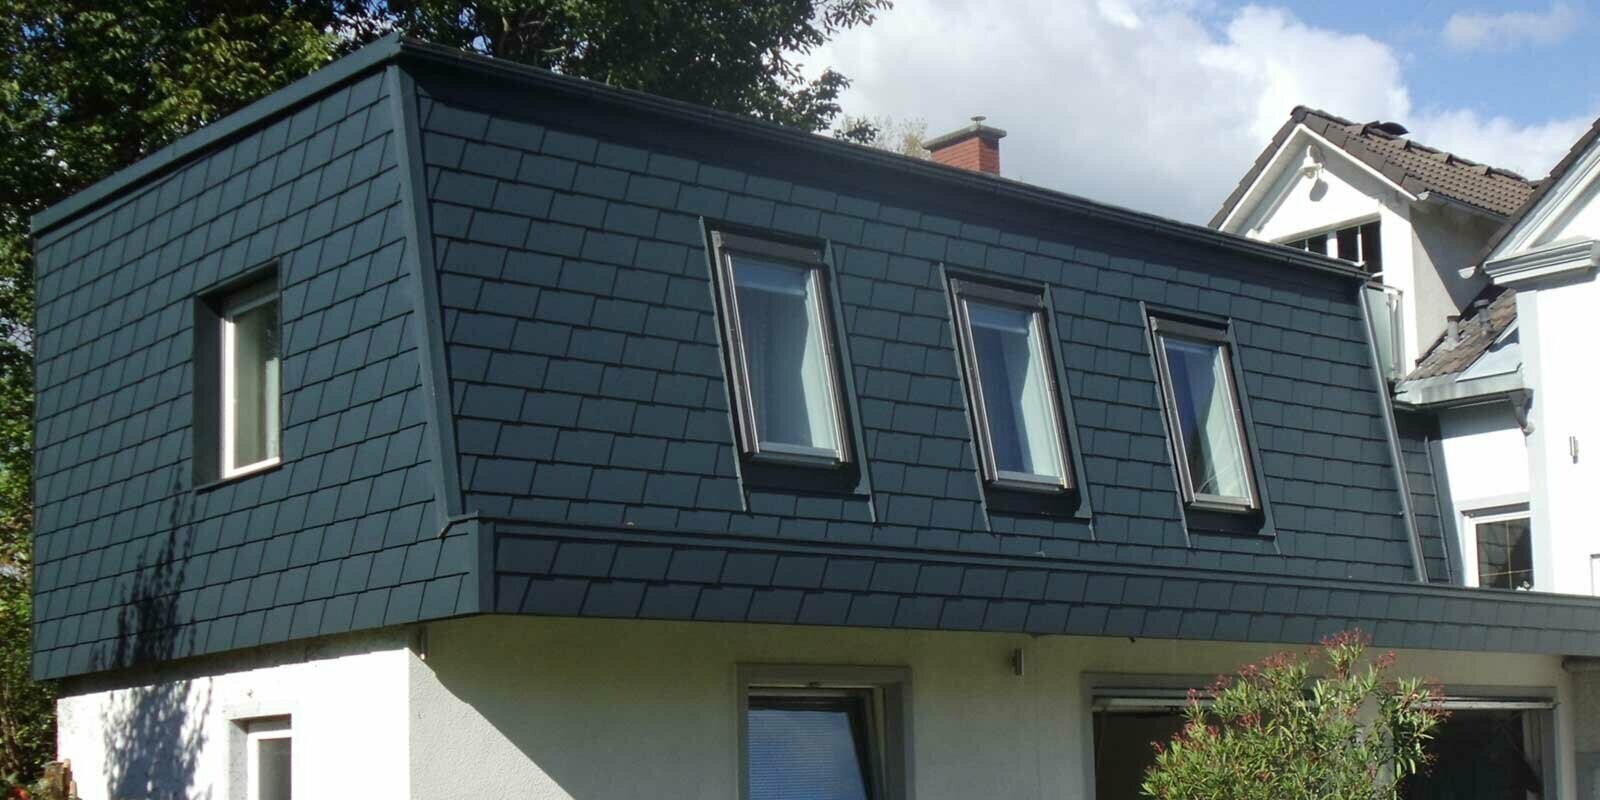 Copertura del tetto con scandole PREFA, moderna sopraelevazione color antracite con molte finestre